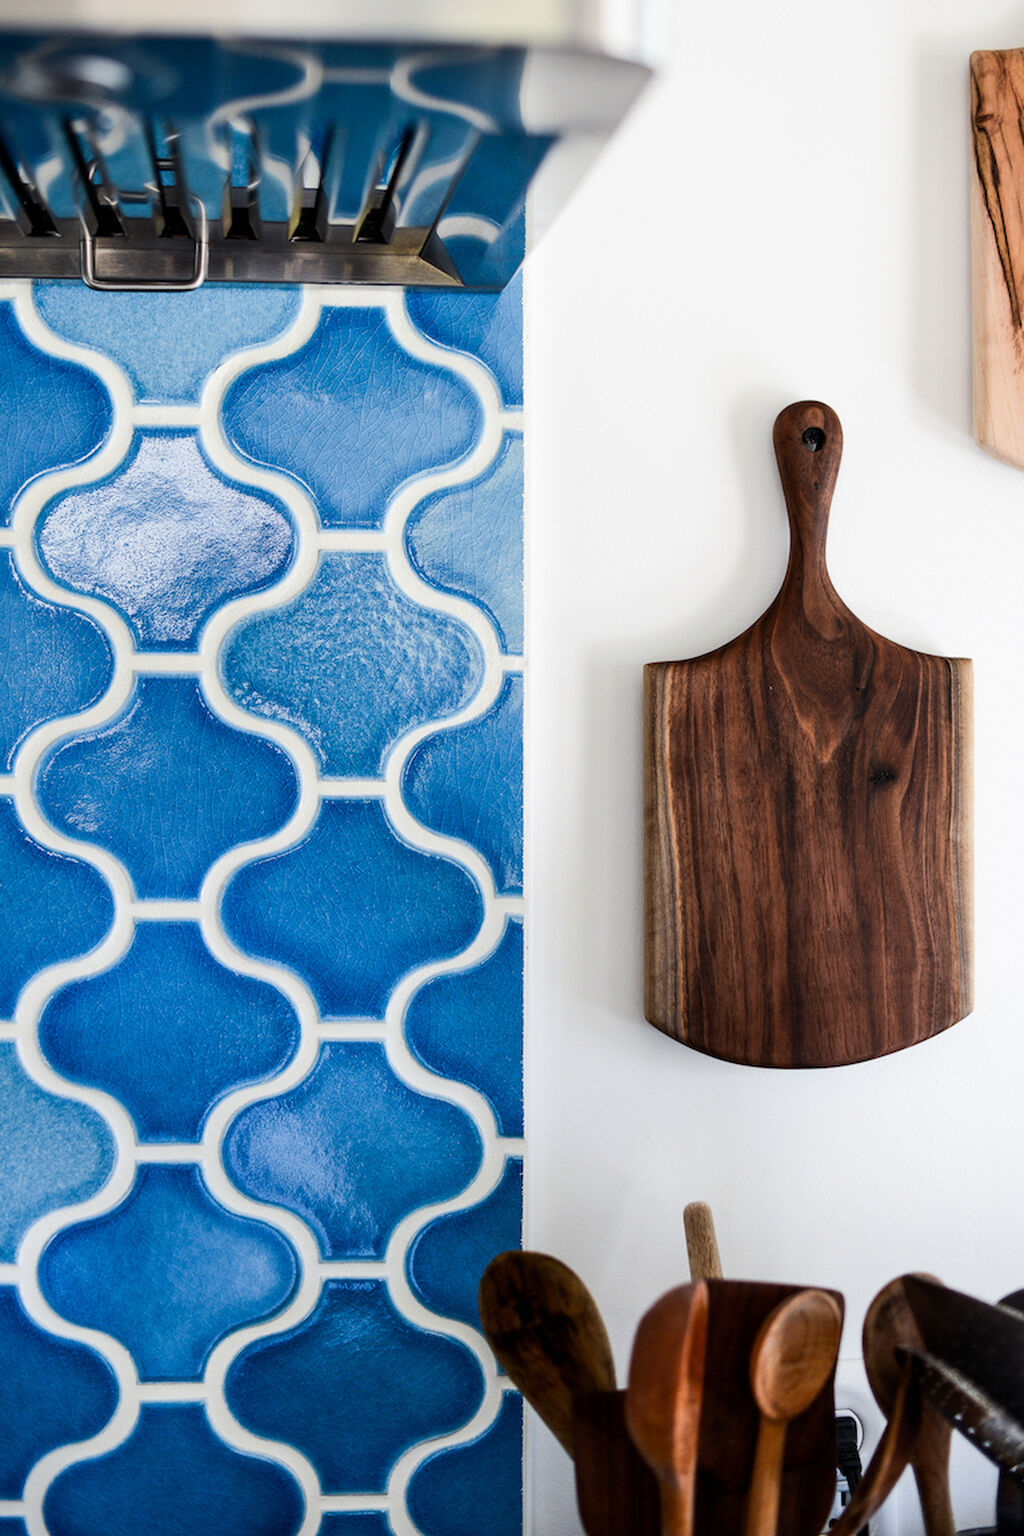 Gạch mosaic đèn lồng trang trí khu vực bếp với men màu xanh nước biển tạo sự tươi mát, thư giãn và bình yên